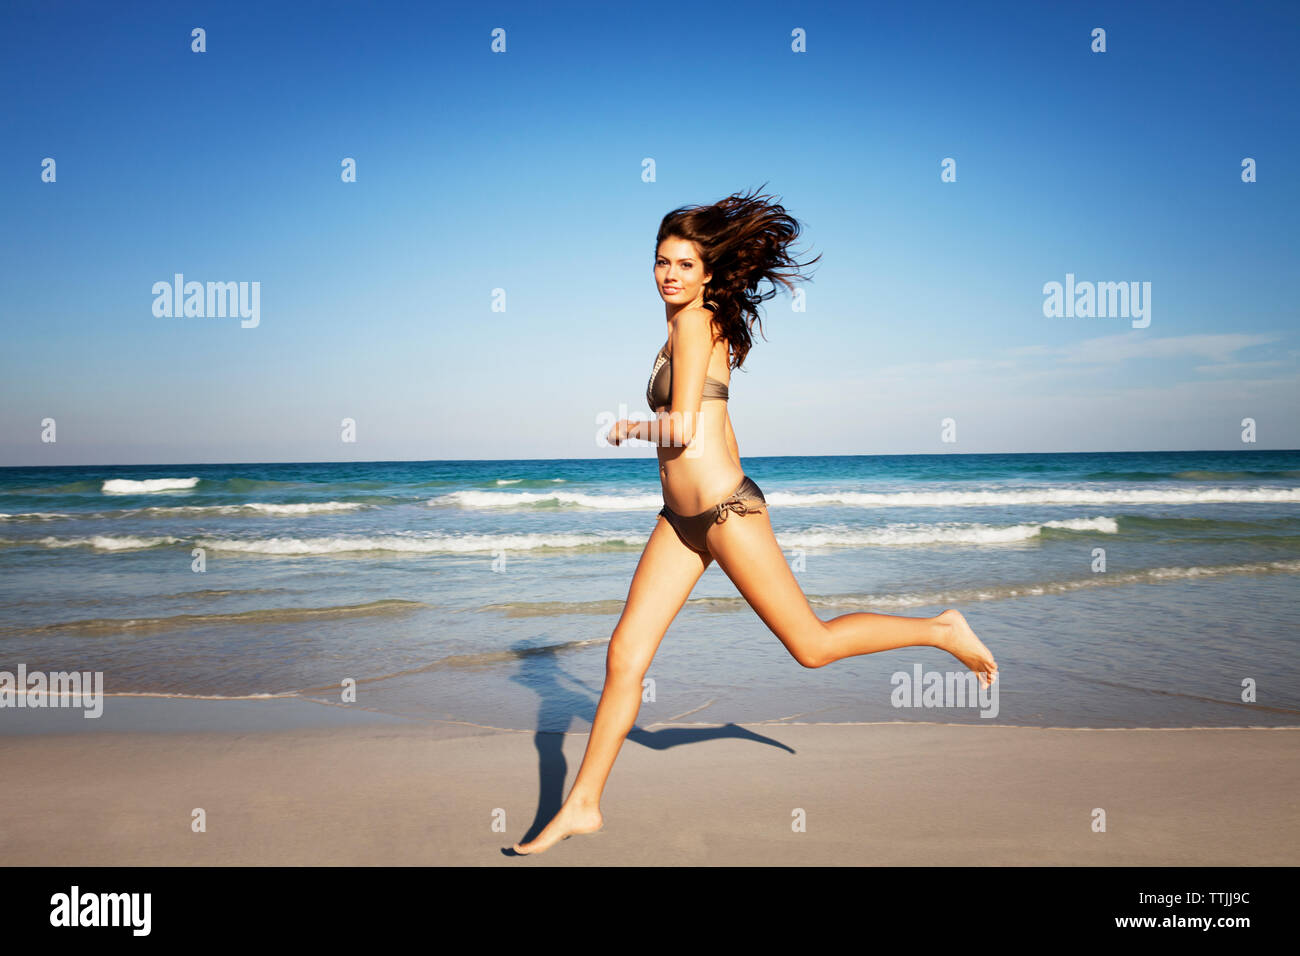 Portrait of woman in bikini tournant au beach contre ciel clair Banque D'Images